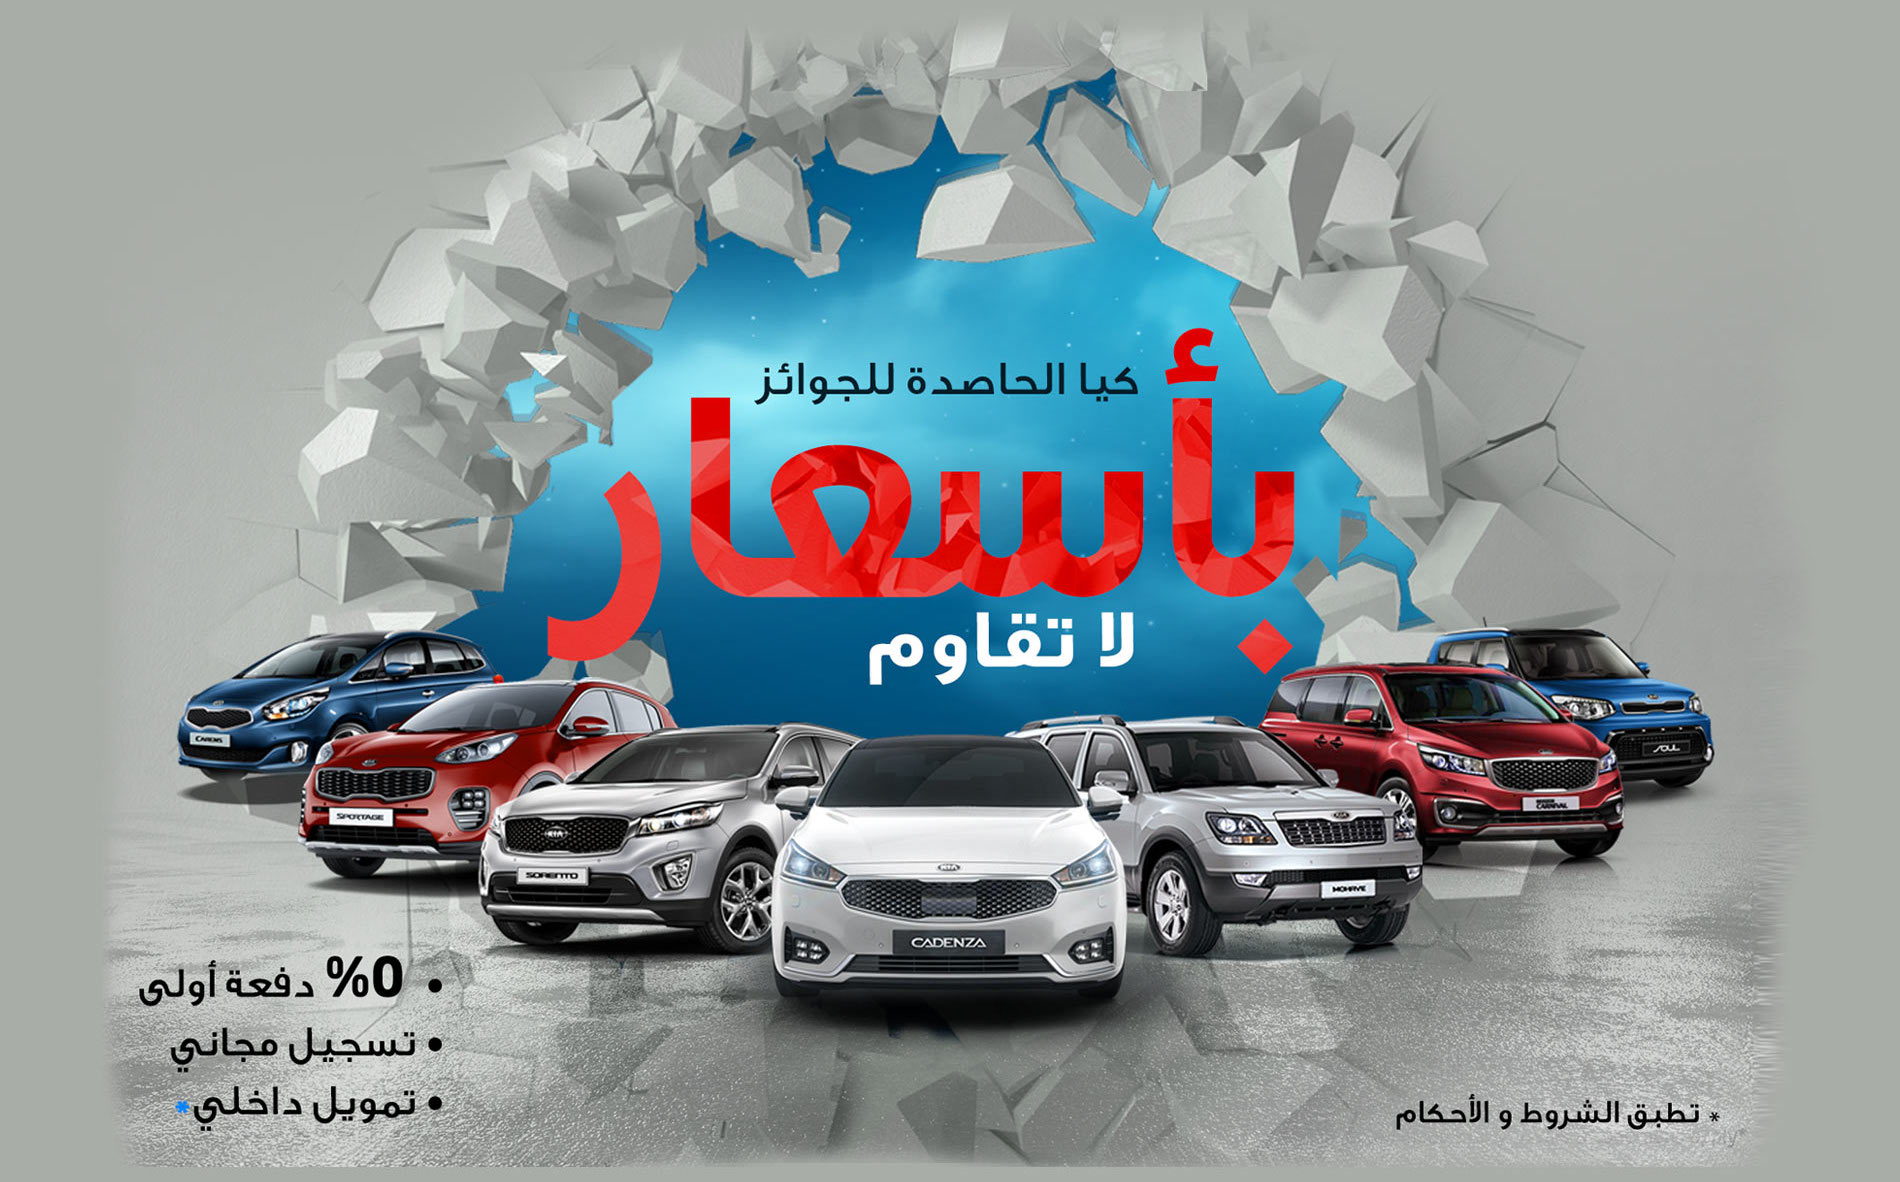 كيا، المنافس القوي في سوق السيارات في قطر